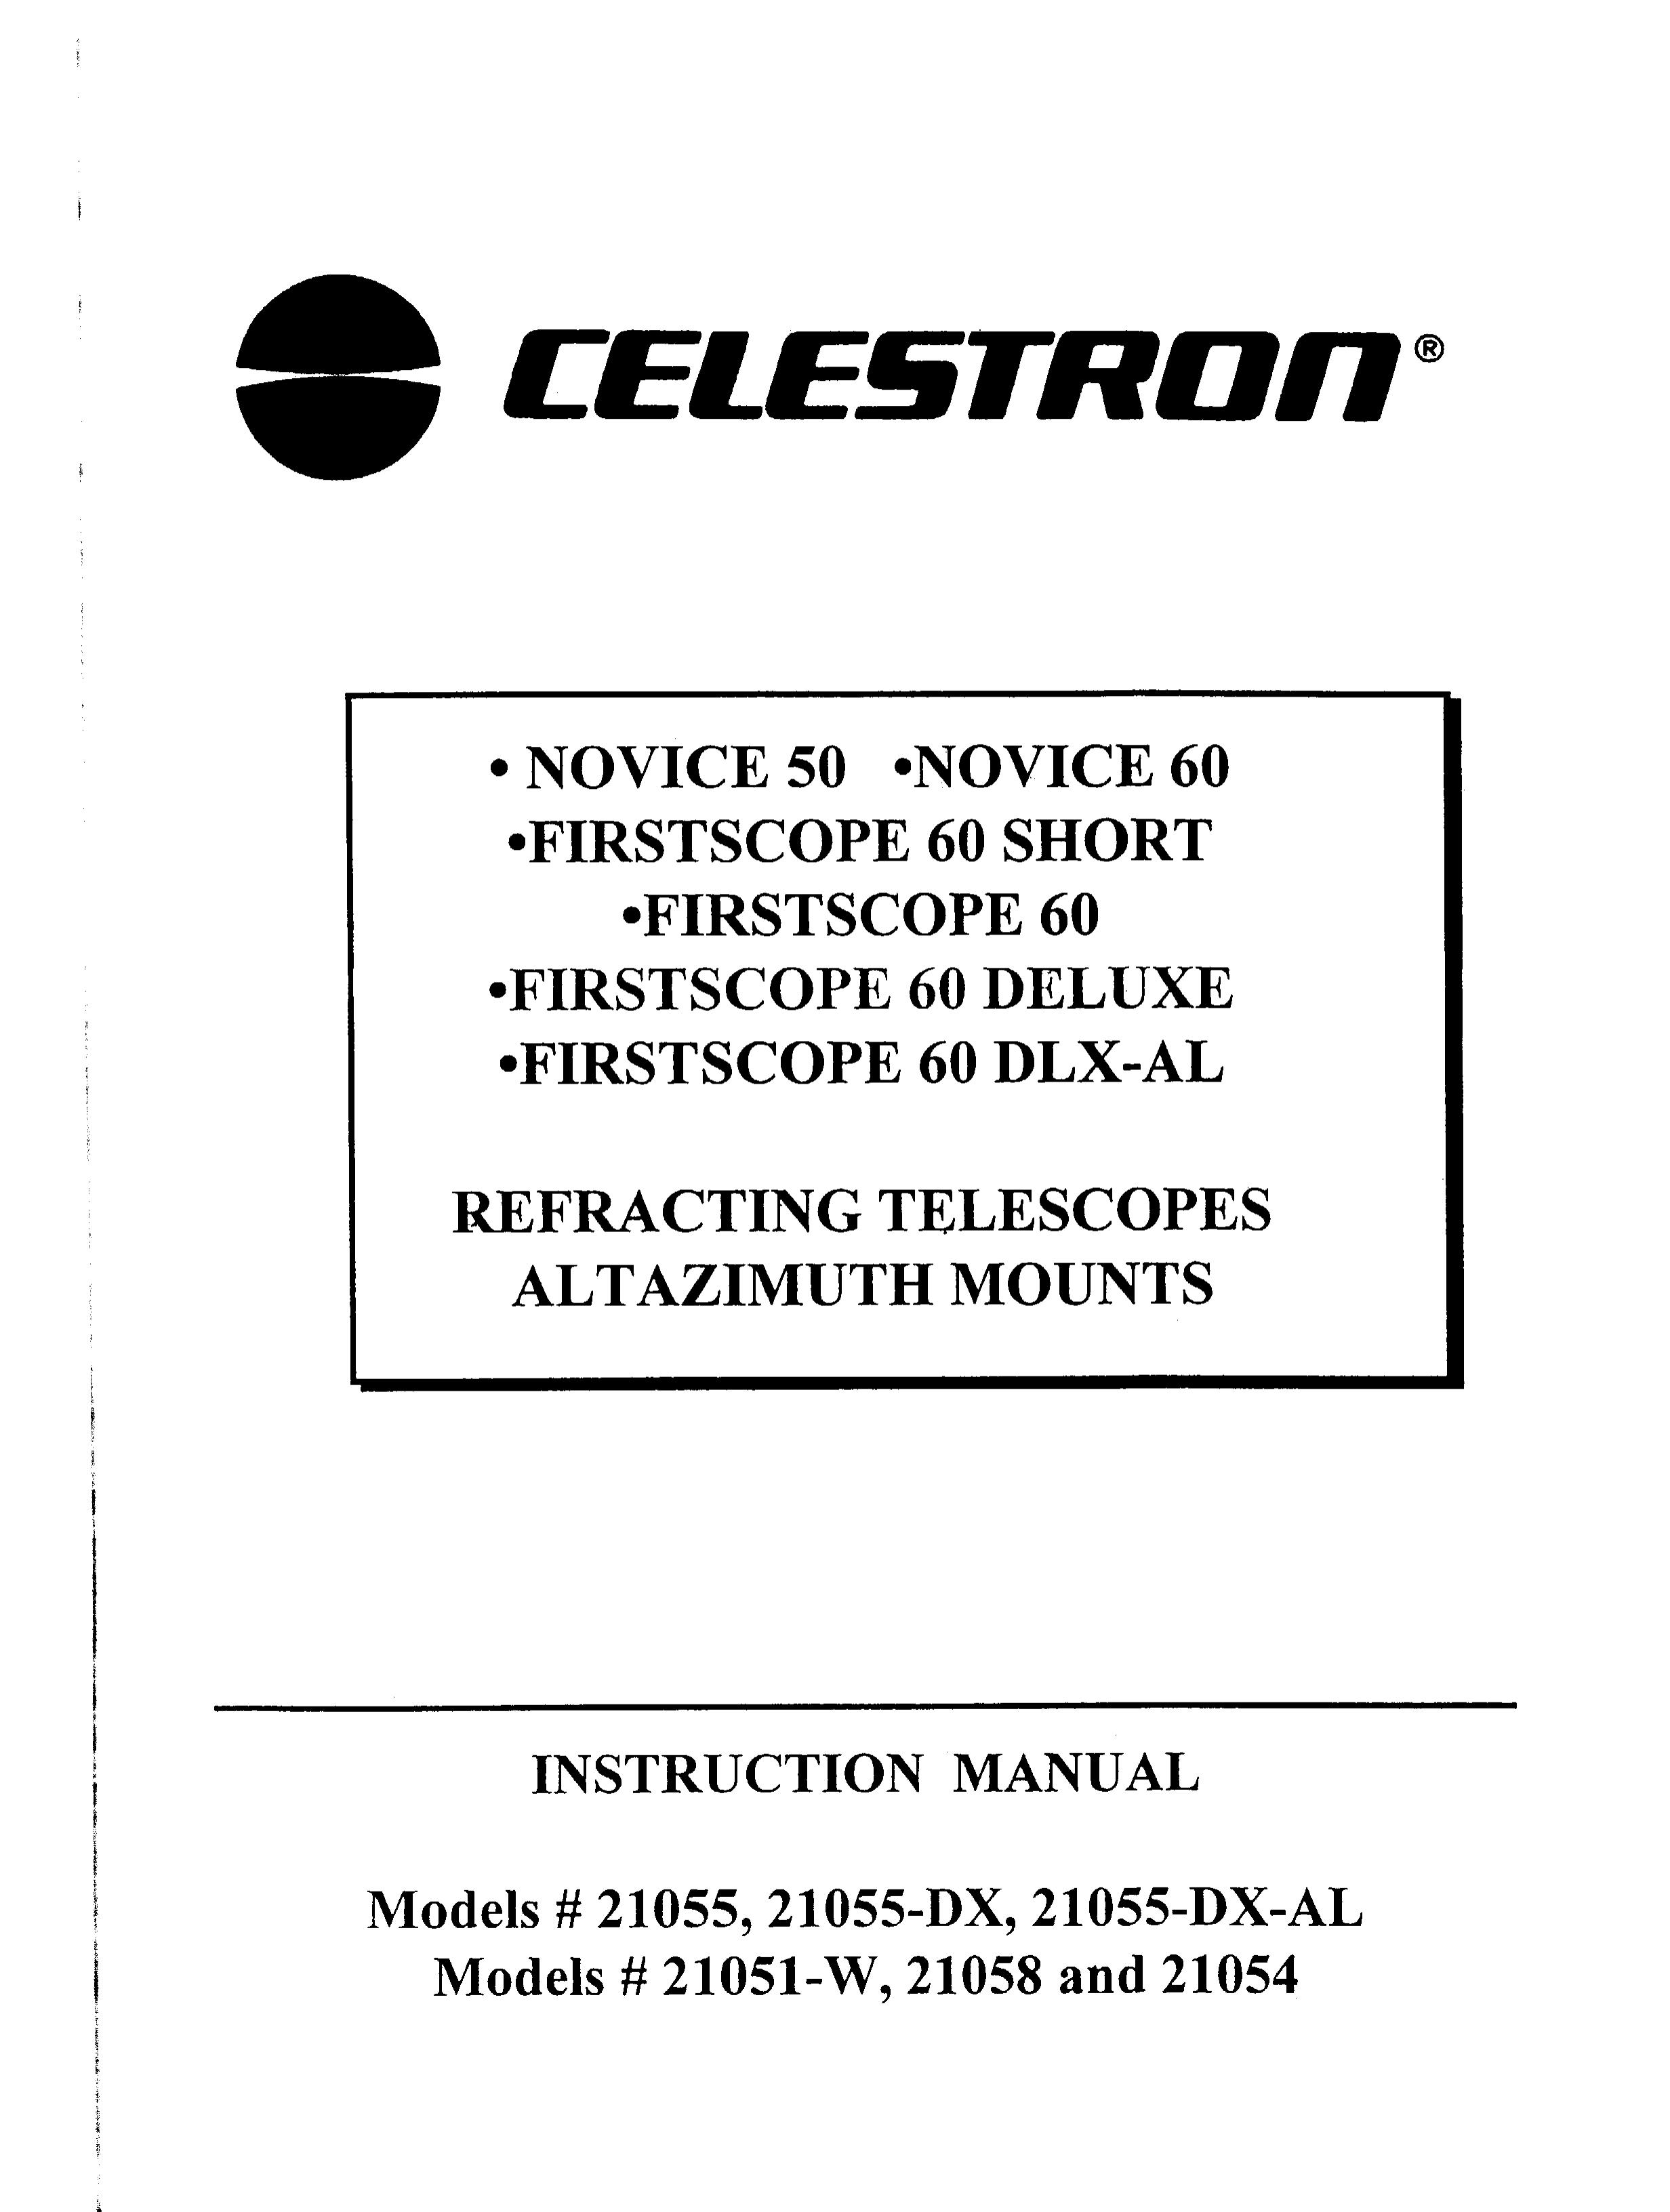 Celestron 21055-DX Telescope User Manual